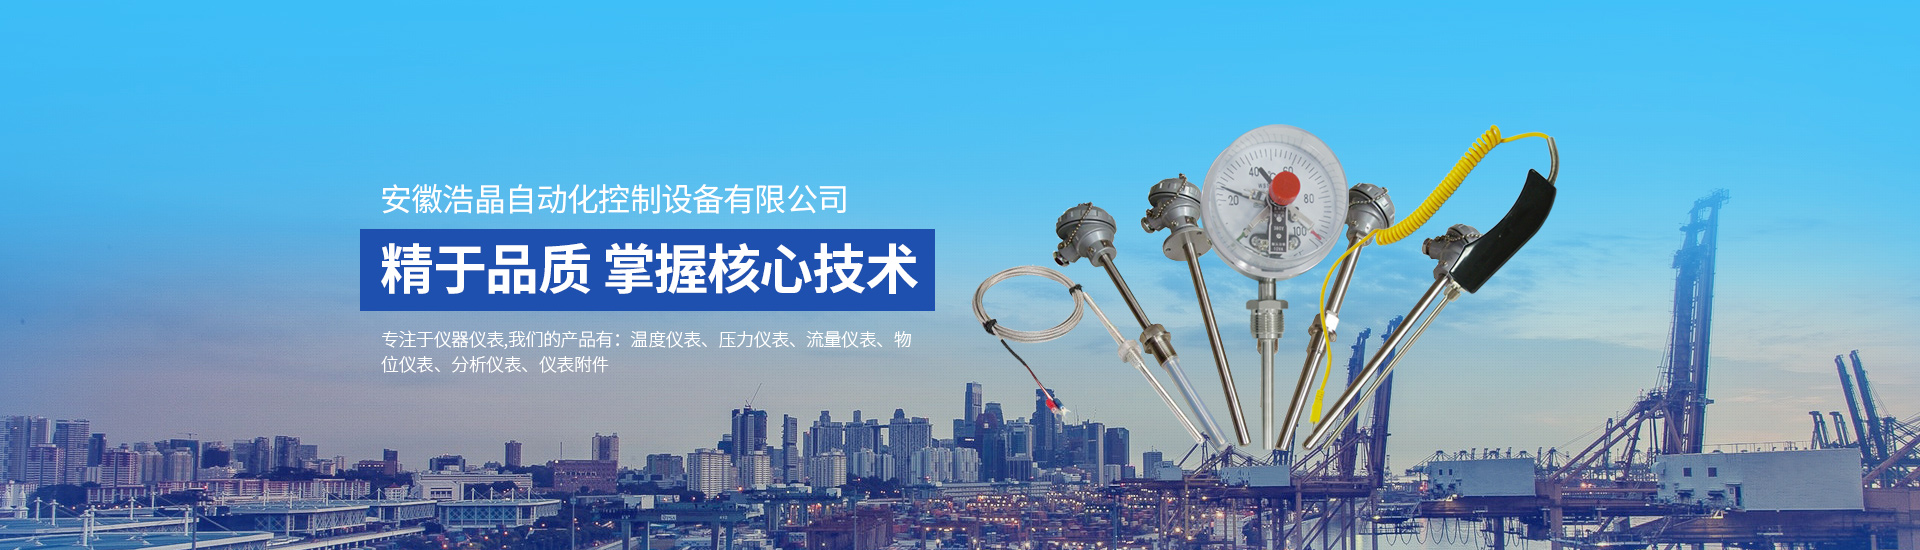 安徽浩晶自动化控制设备有限公司